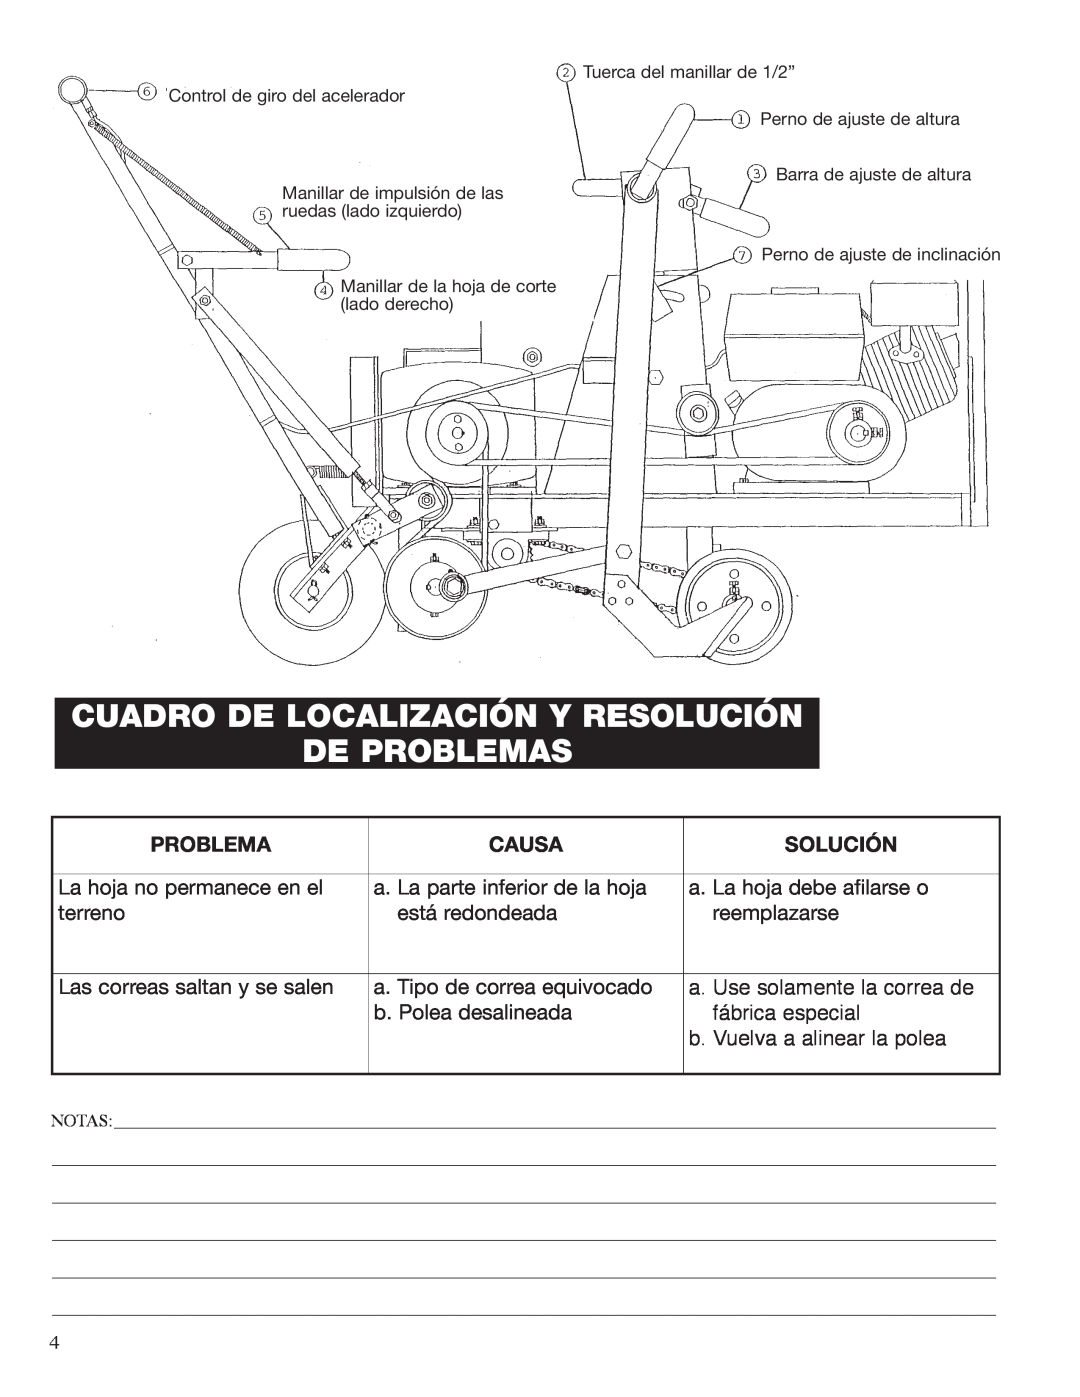 Classen SC-12 manual Cuadro De Localización Y Resolución De Problemas, Causa, Solución, La hoja no permanece en el, terreno 